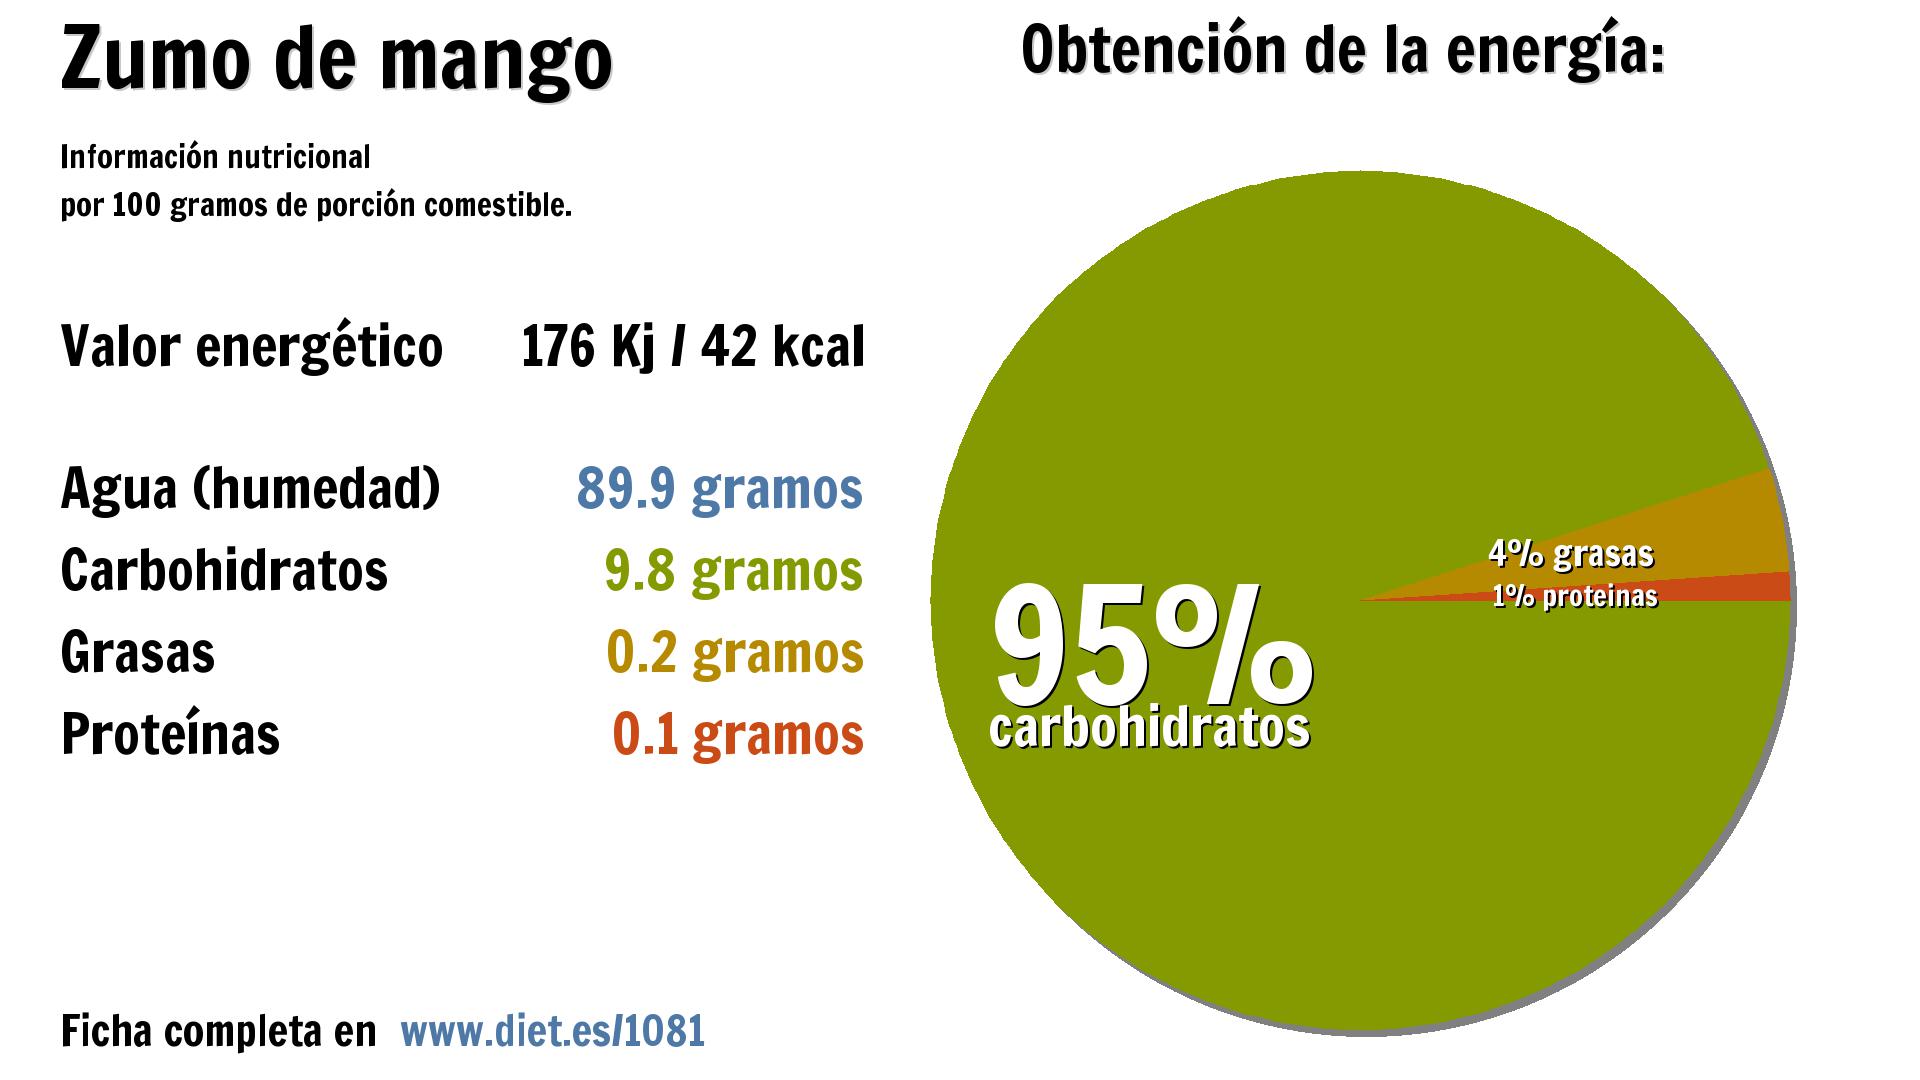 Zumo de mango: energía 176 Kj, agua 90 g. y carbohidratos 10 g.